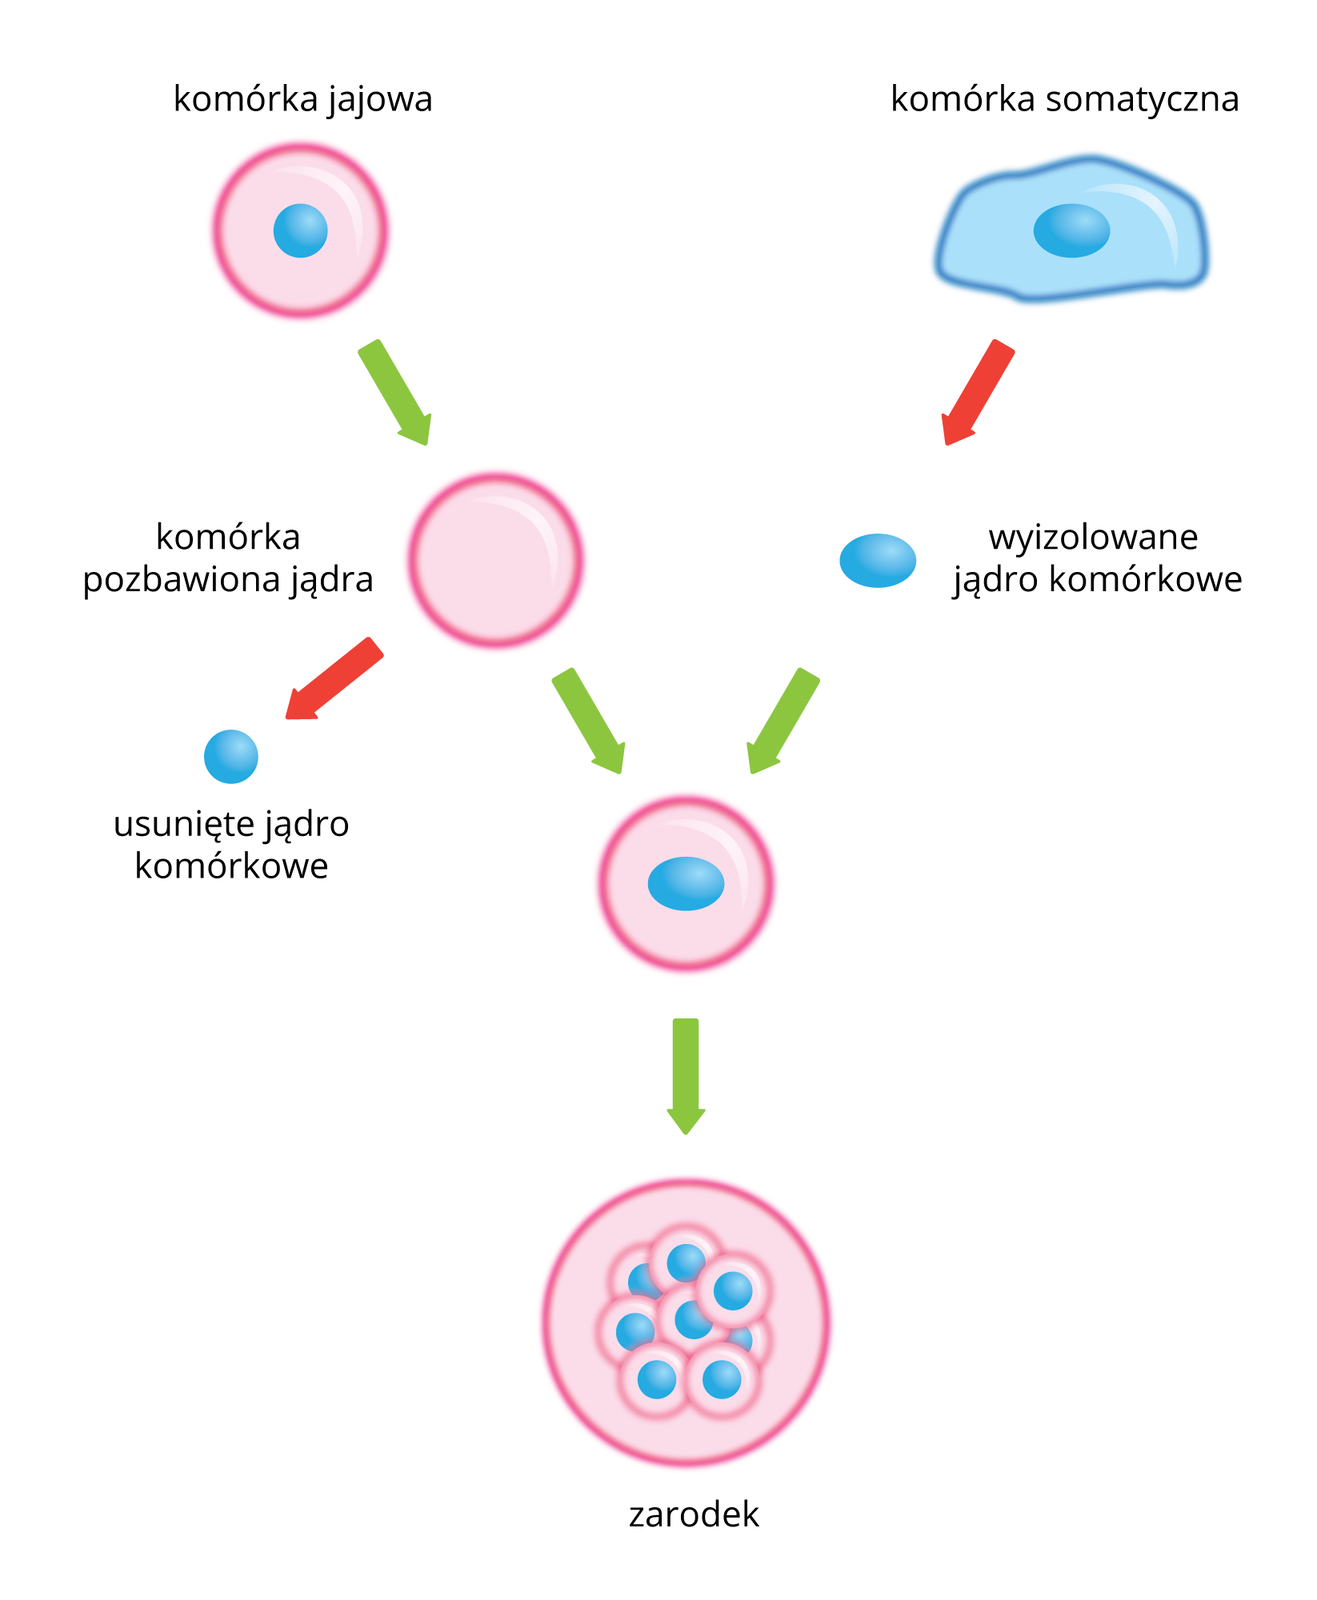 Schemat przestawia metodę transplantacji jąder komórkowych. Z lewej znajduje się ciąg różowych komórek rozrodczych z niebieskimi jądrami. Po prawej błękitna komórka somatyczna z niebieskim owalnym jądrem. Zielone strzałki wskazują kolejne etapy transplantacji. Czerwone strzałki wskazują usunięcie jądra komórki rozrodczej i wstawienie jądra komórki somatycznej. Na dole wiele komórek przedstawia zarodek.